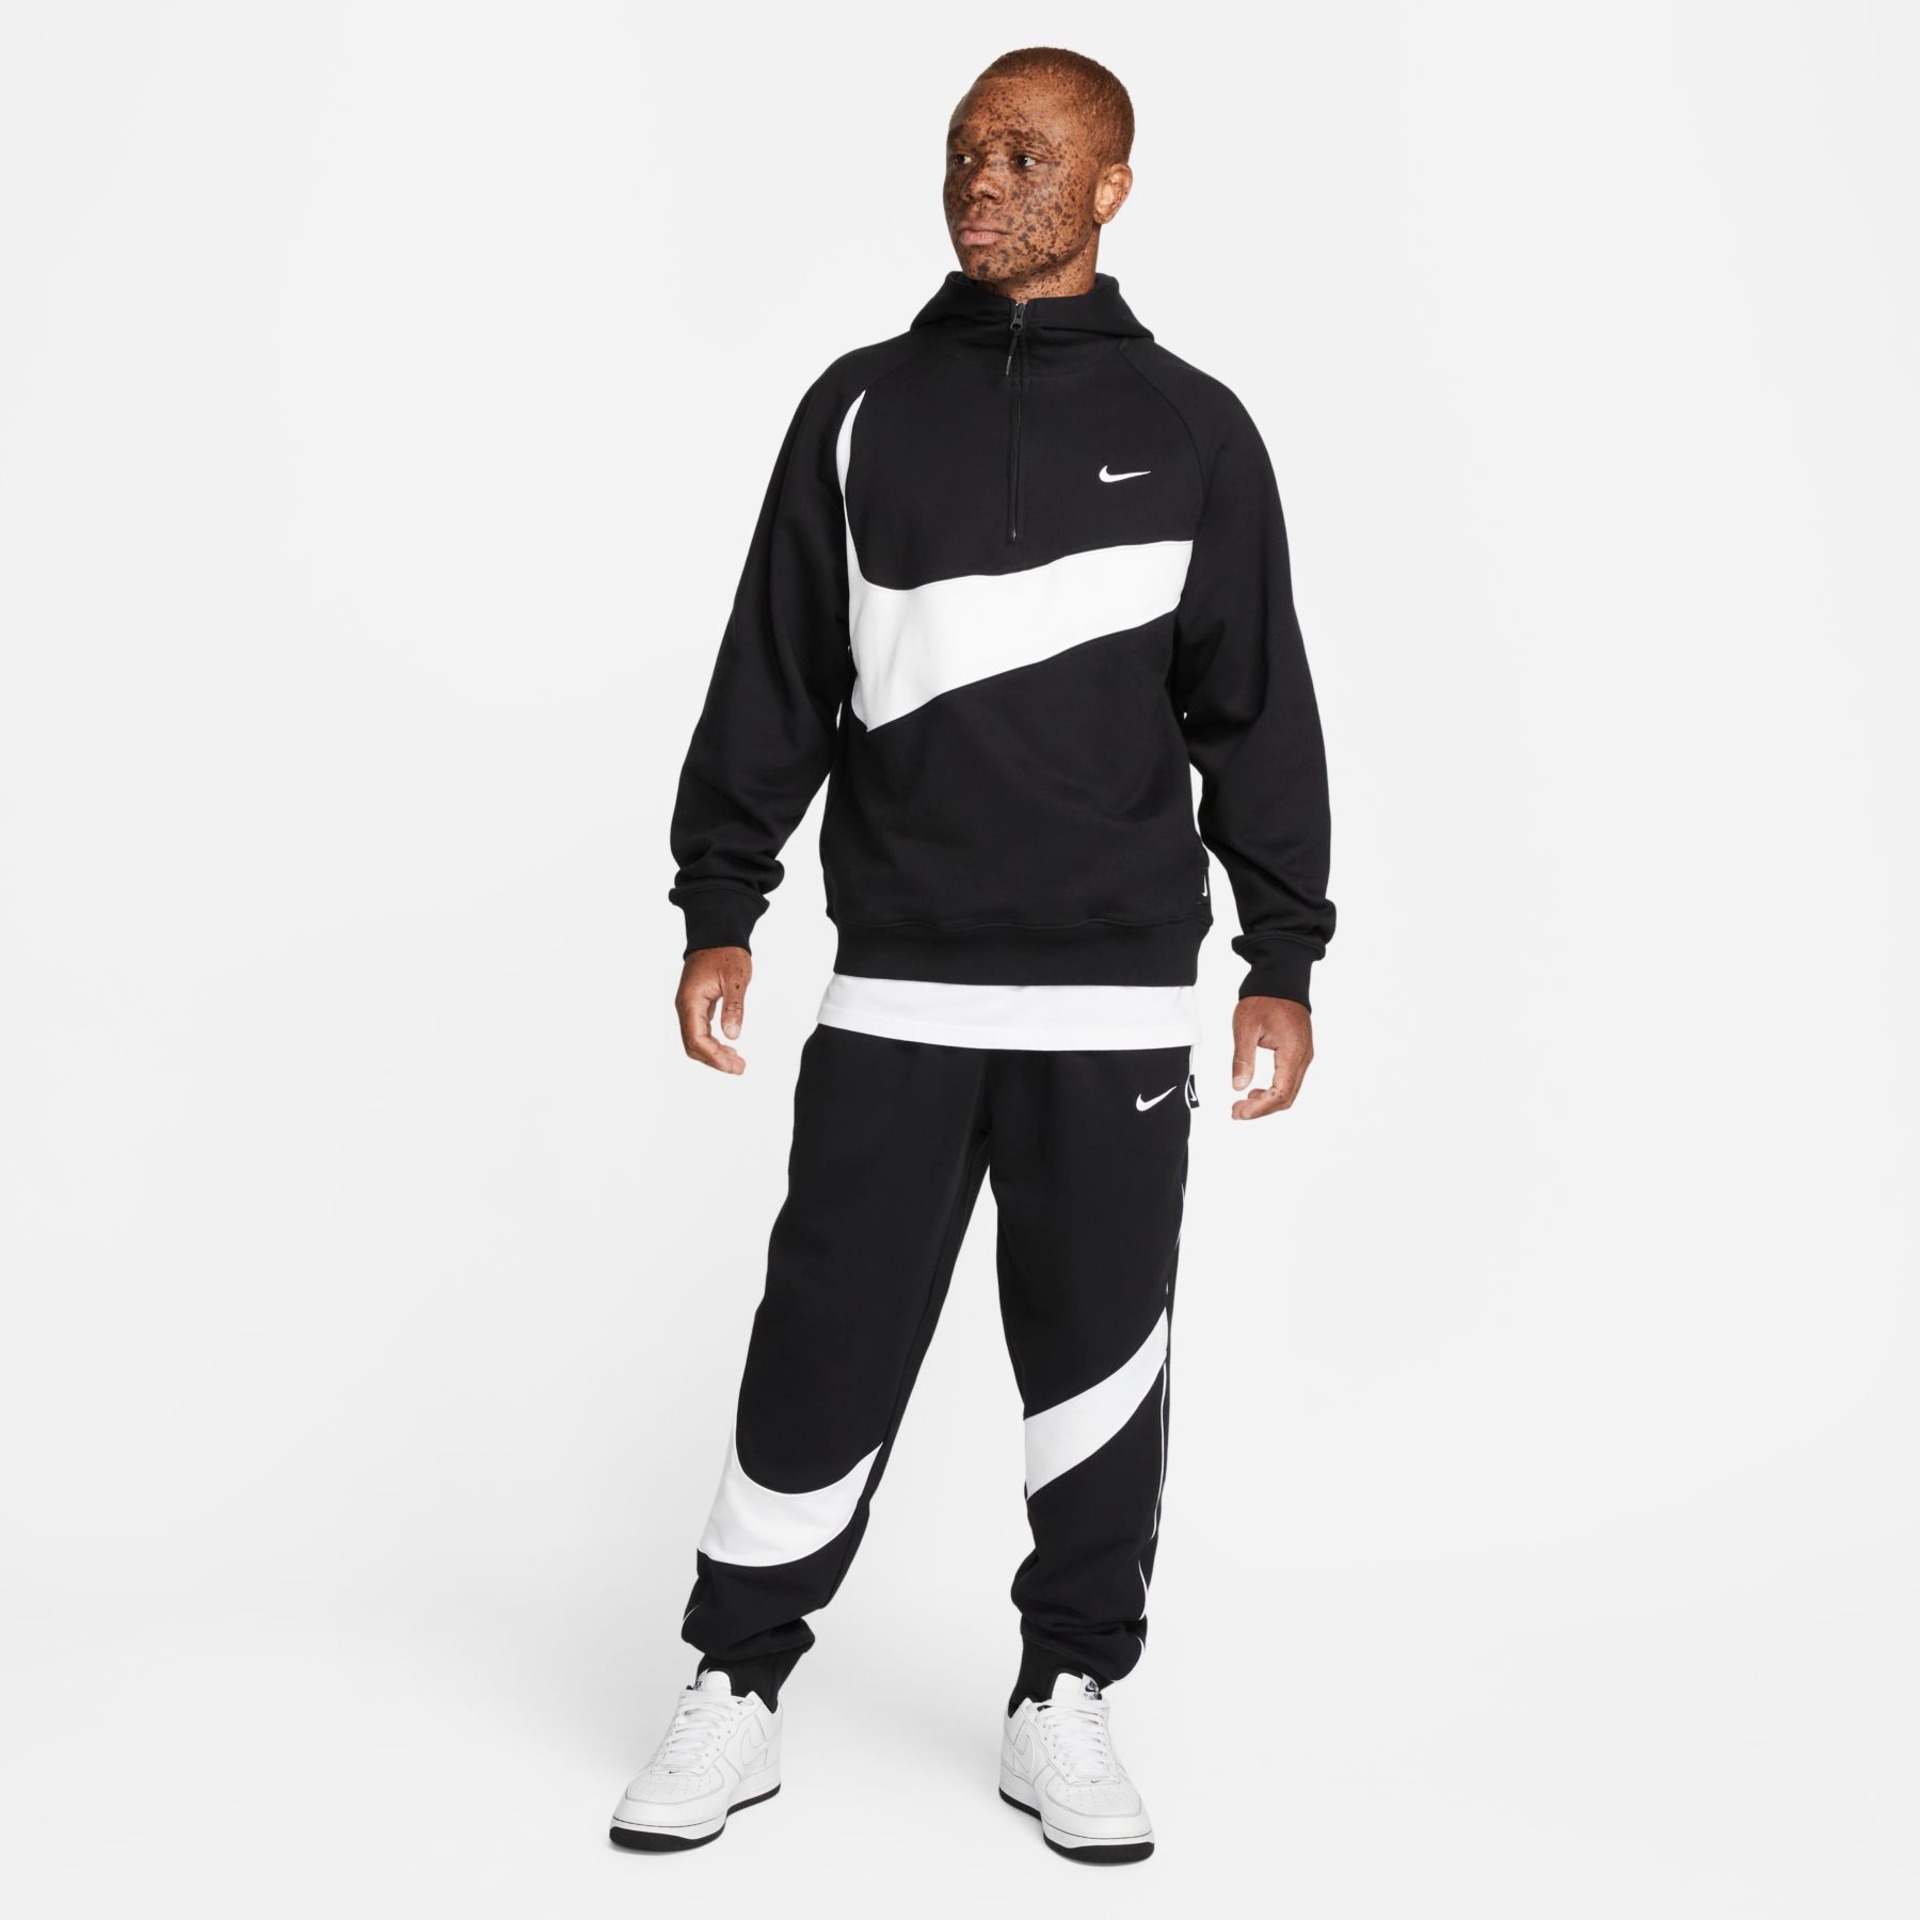 Blusão Nike Swoosh Masculino - Foto 7